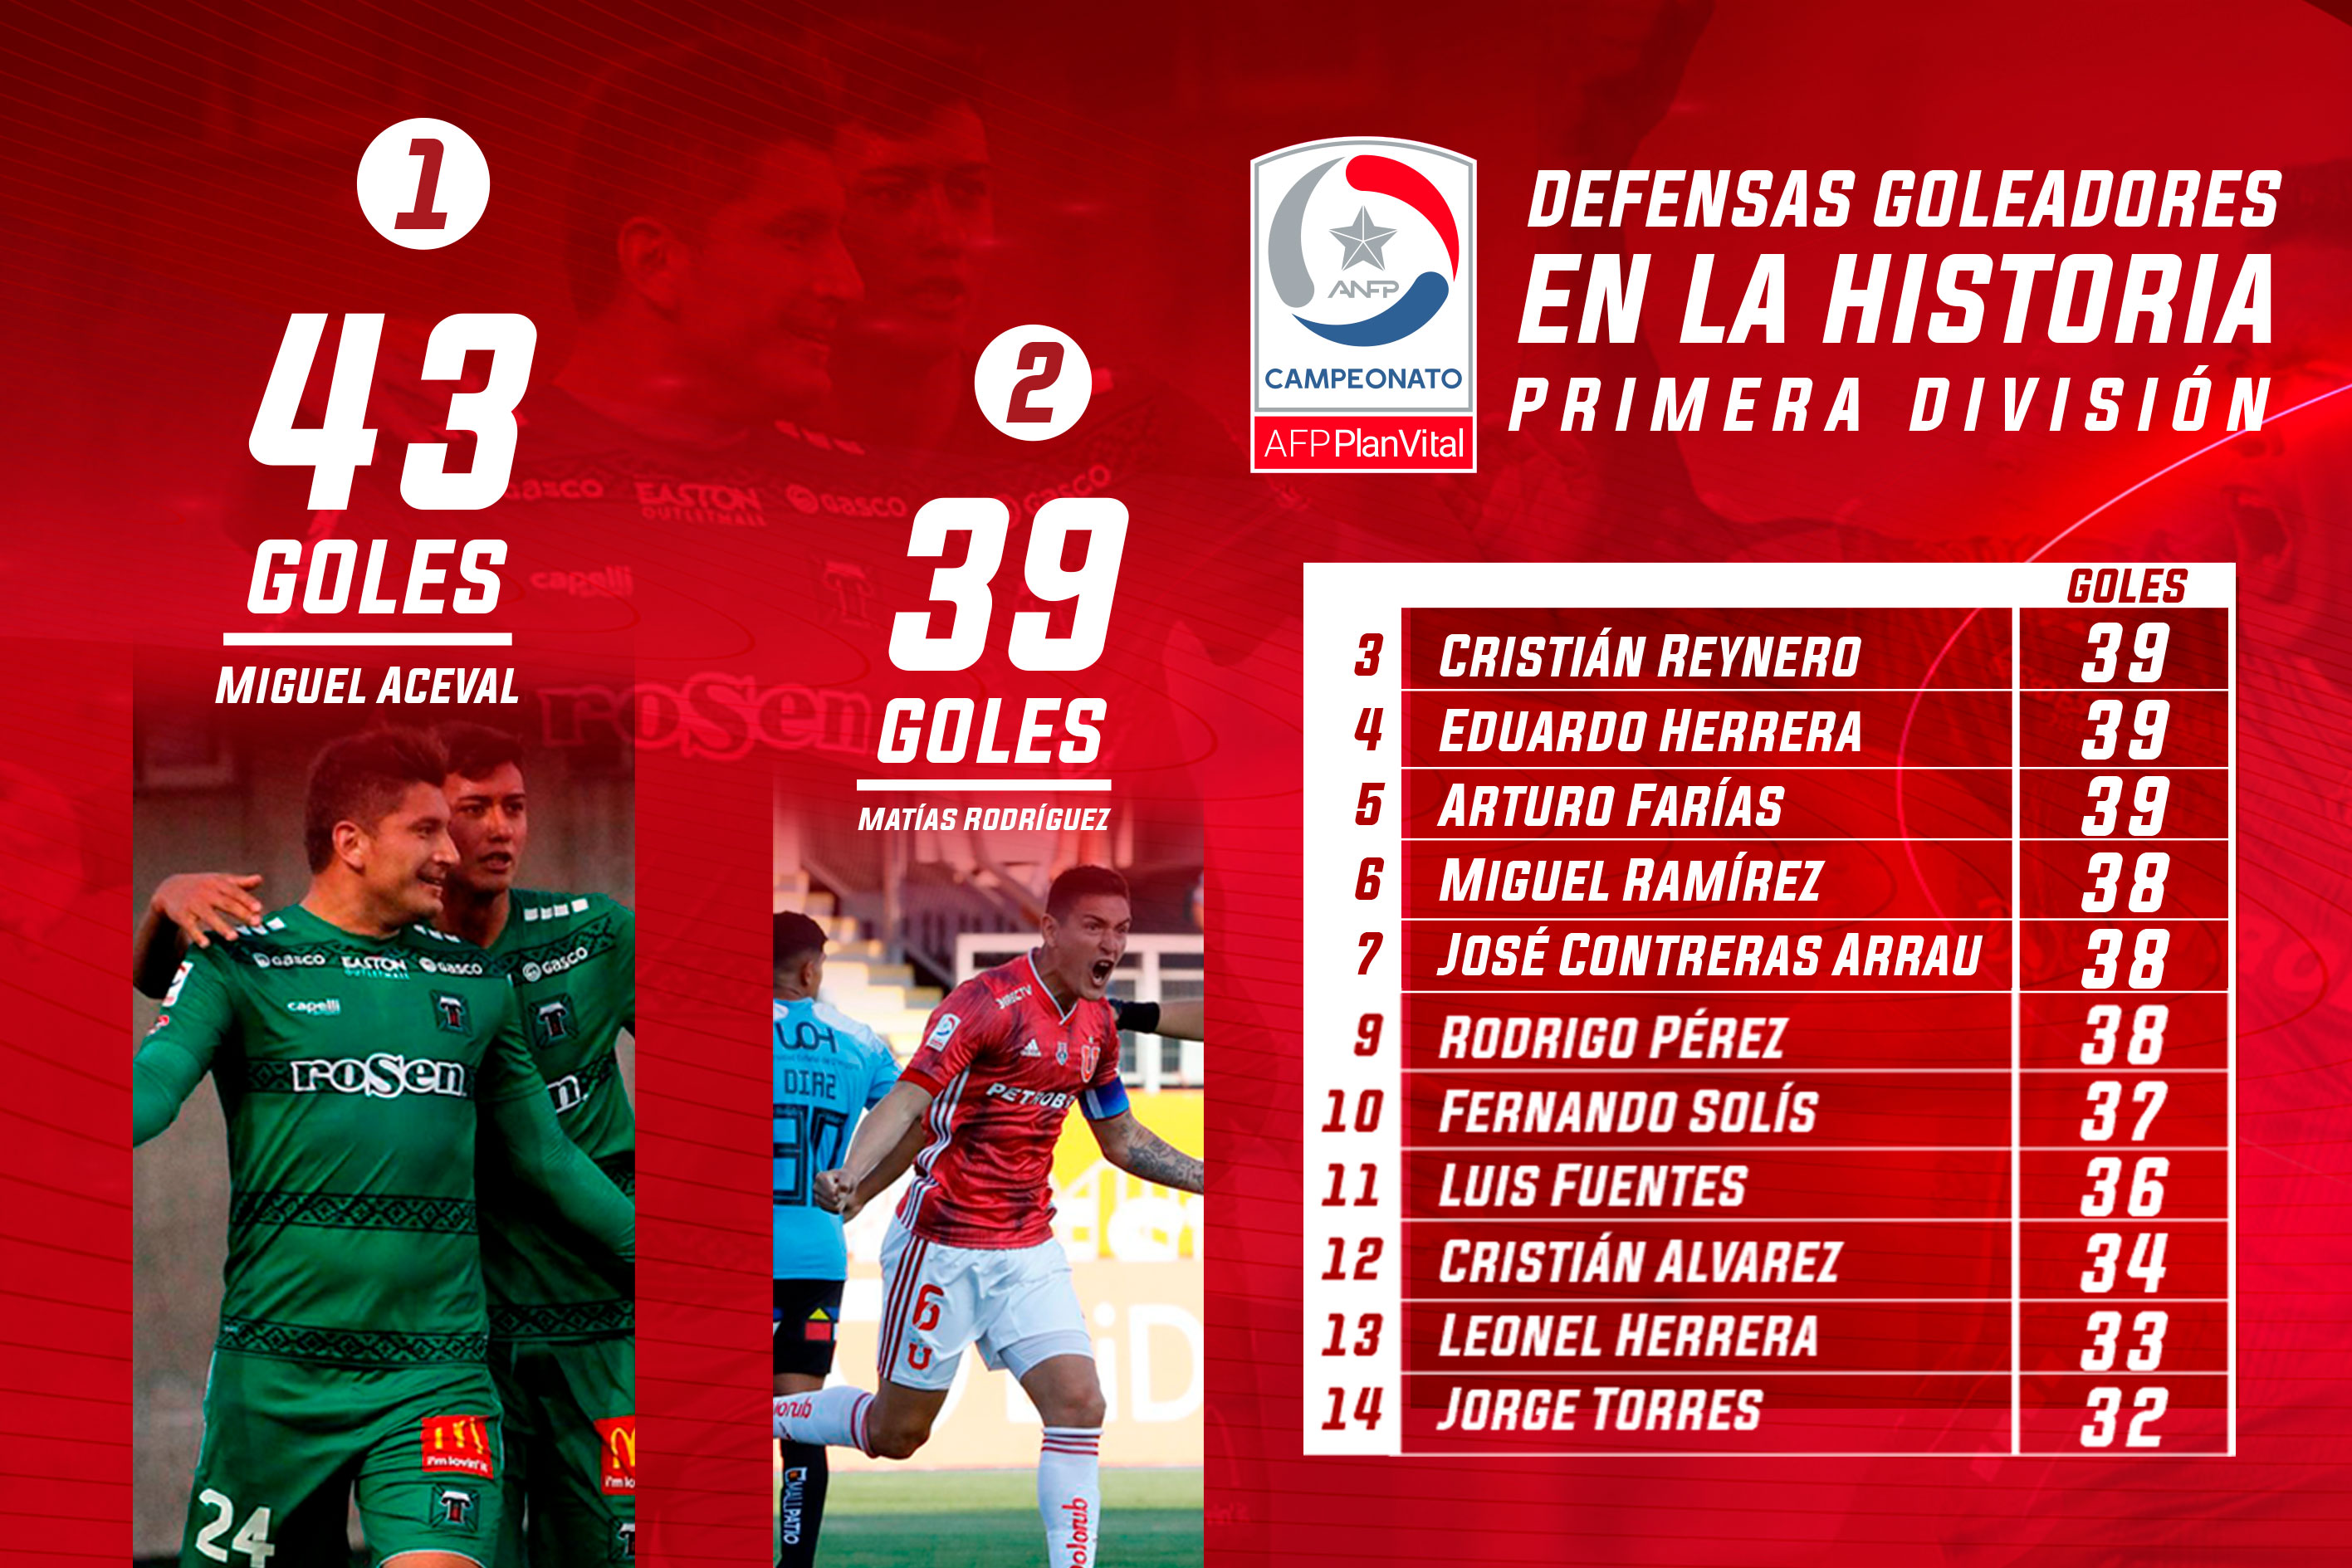 Los defensas más goleadores en la historia de Primera División